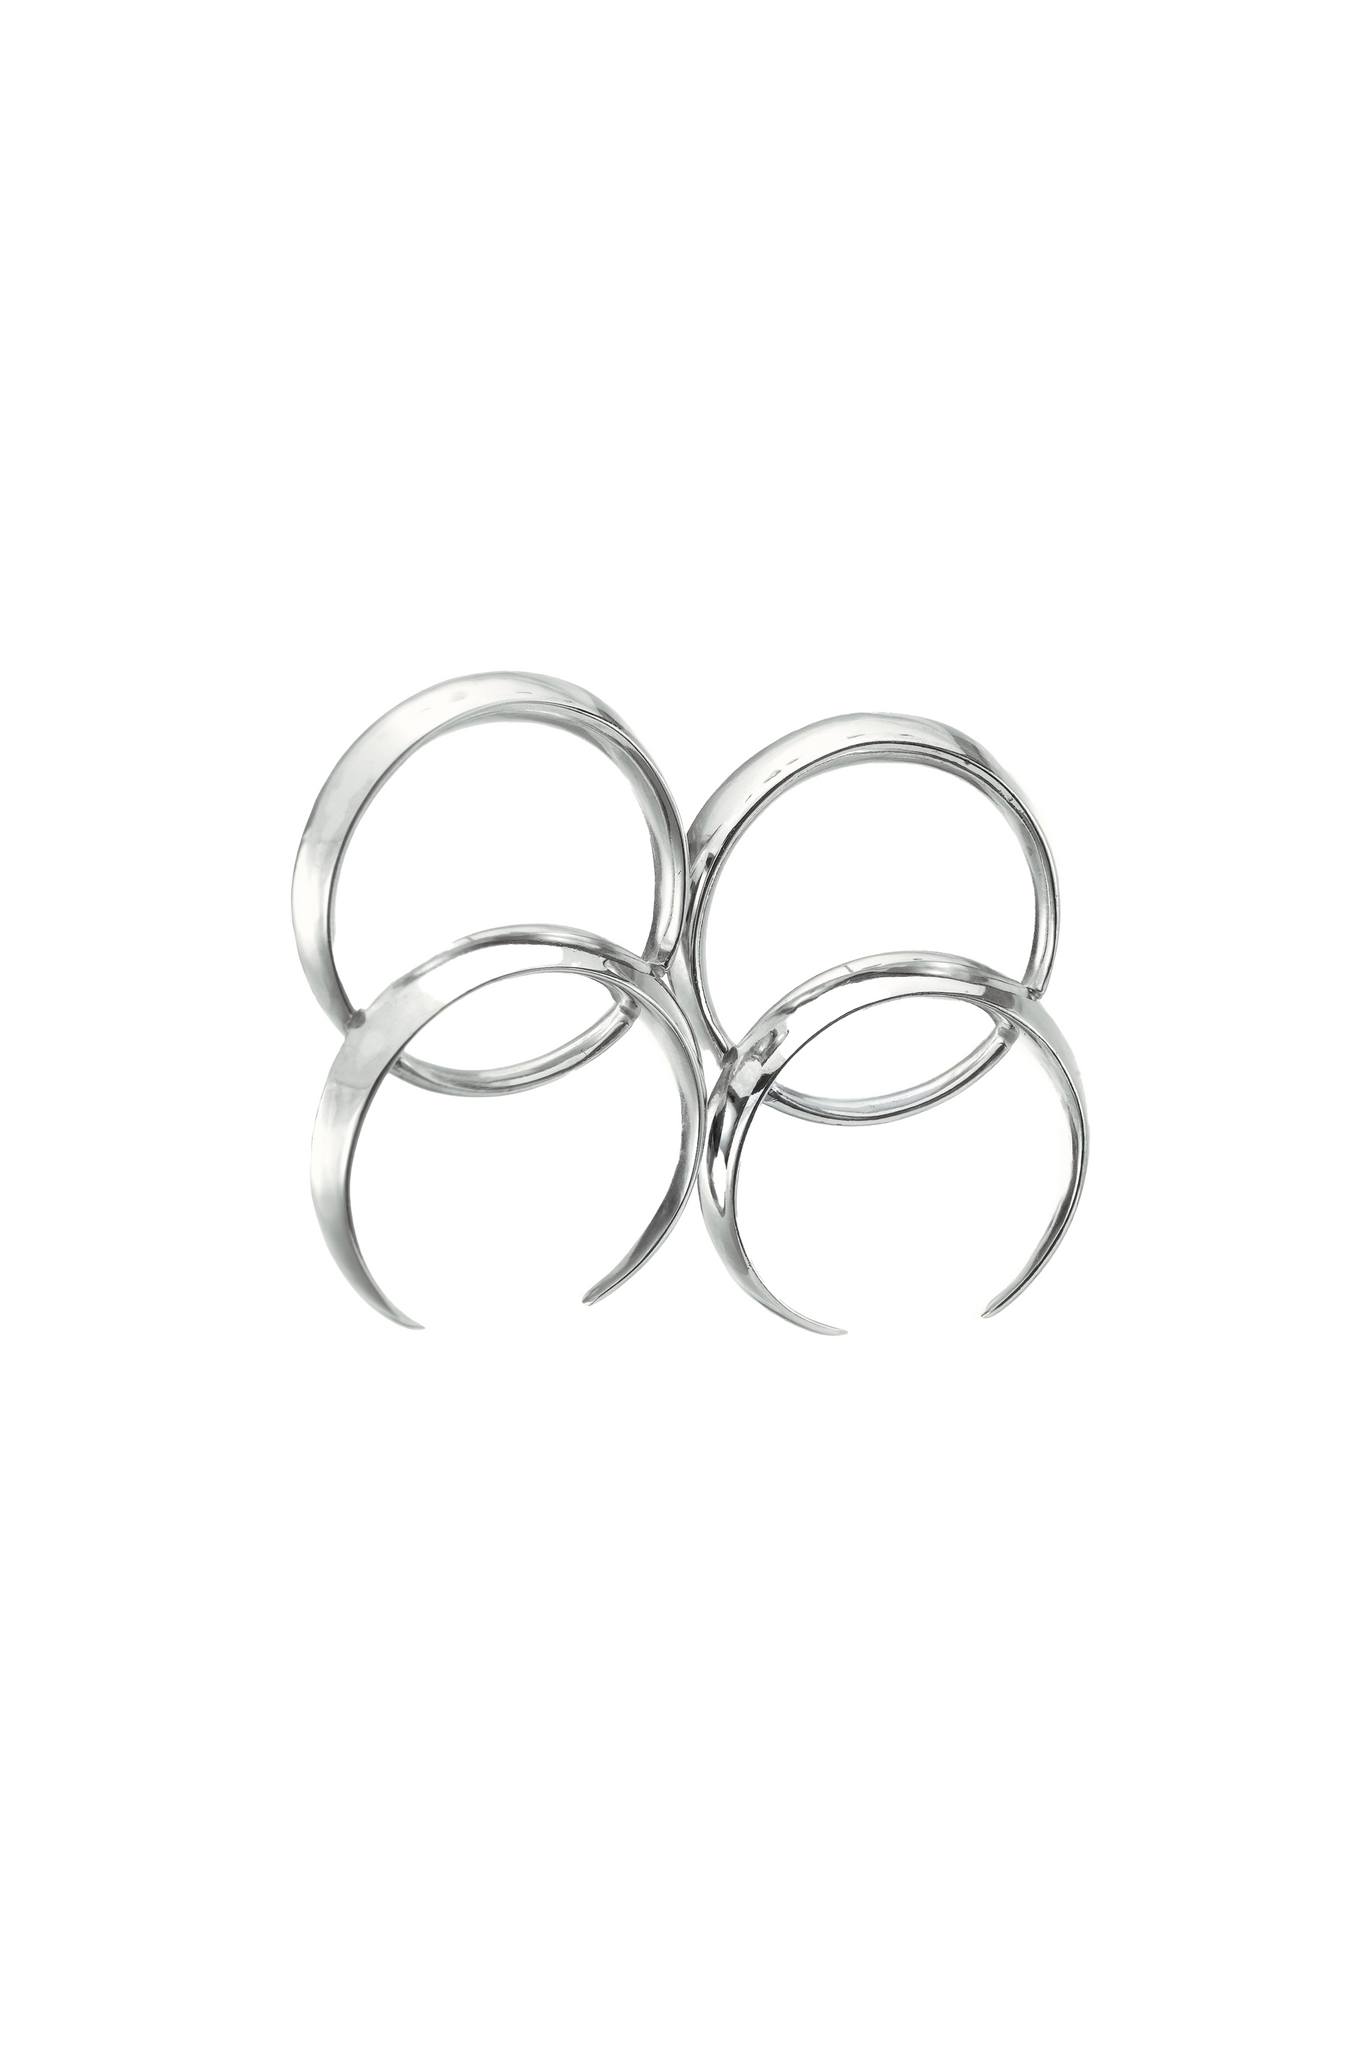 Huntress Earrings | Sterling Silver